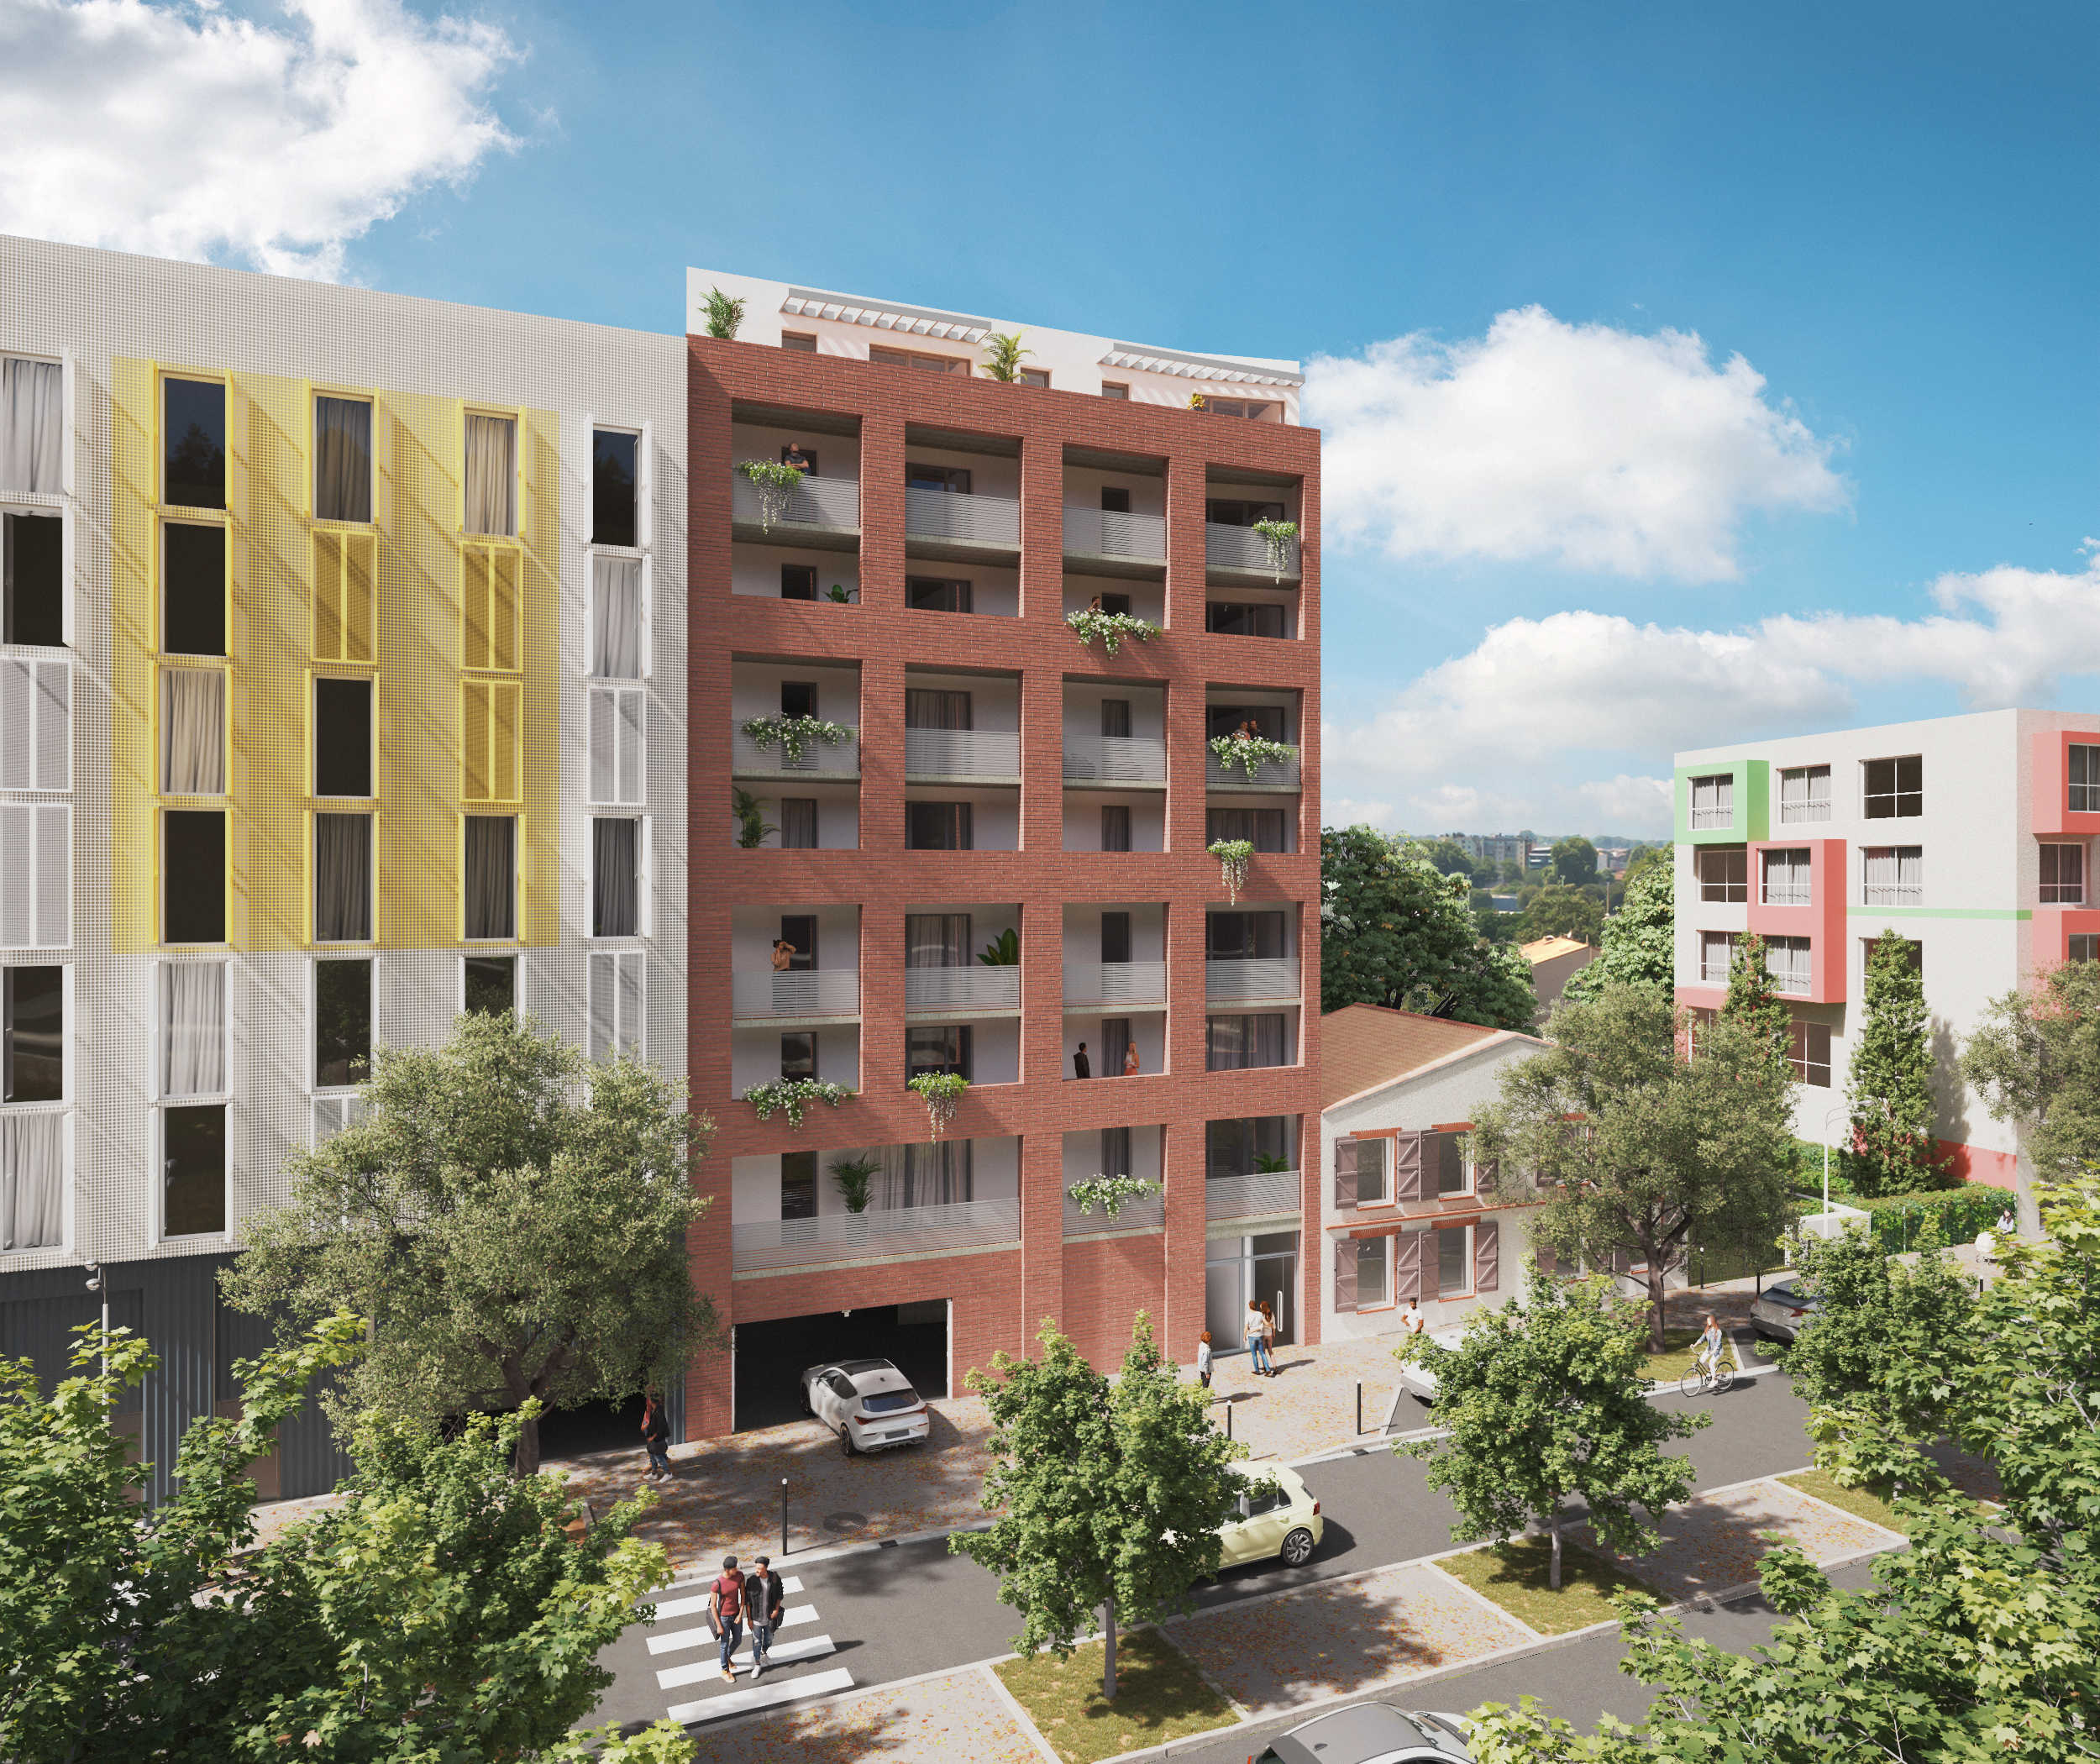 Programme immobilier neuf Toulouse à 800m du métro A Patte d'Oie